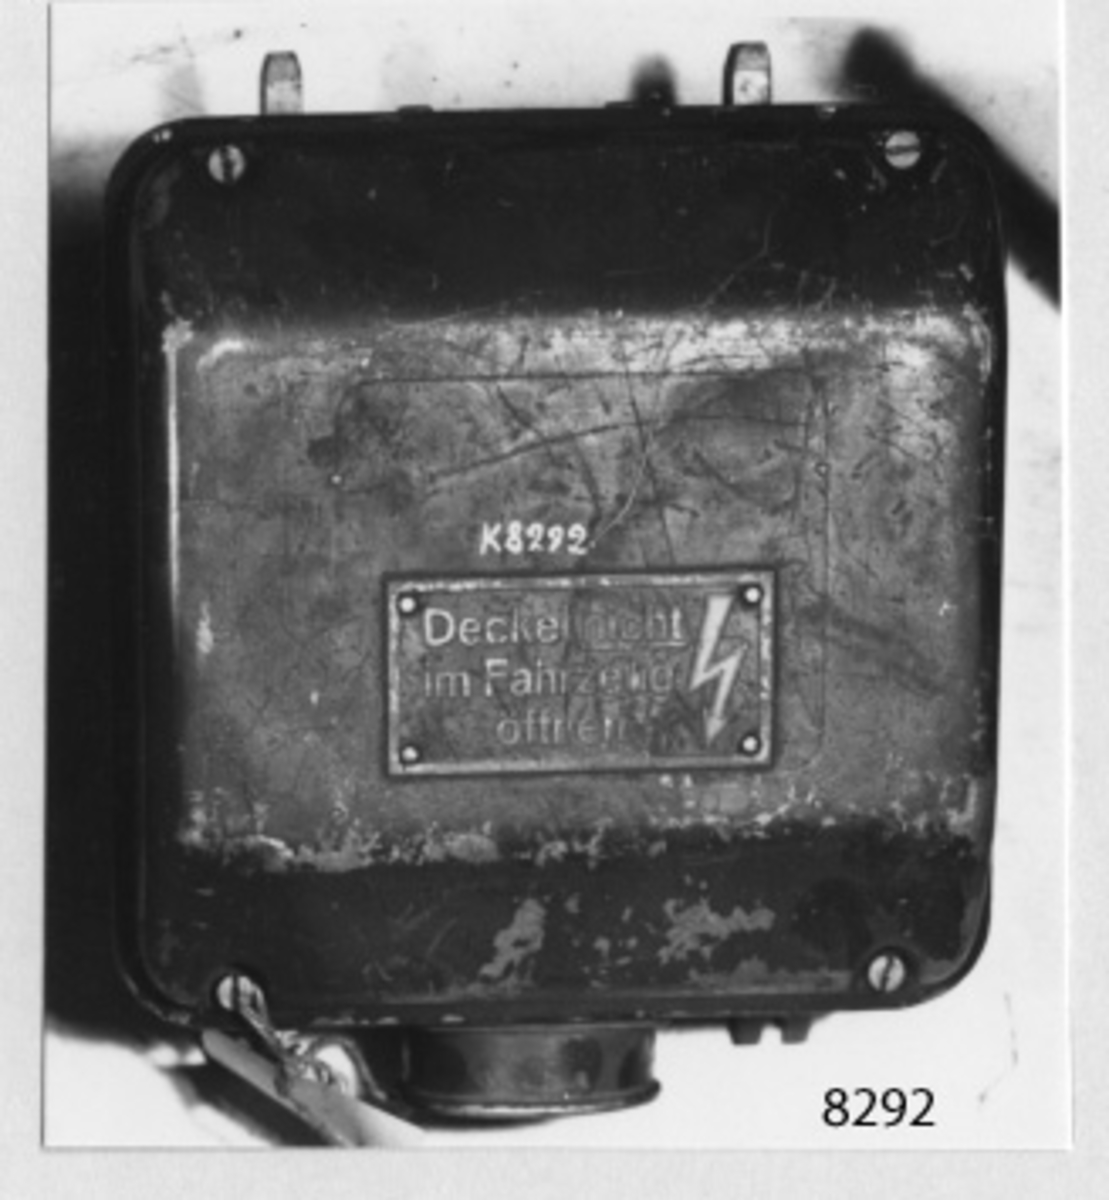 Sändaraggregat, typ U 10a 1. Helt inbyggd i en kåpa av lättmetall emd lock som fasthålles med 4 st skruvar. På undersidan kraftuttag. Svartmålad. Märkt: typ U. 10 a 1. Nr 116 559.
NV 12 volt 67 ampere. HV 350  0,115. Umd/min 3500 h % 50.
Baujahr 1944.